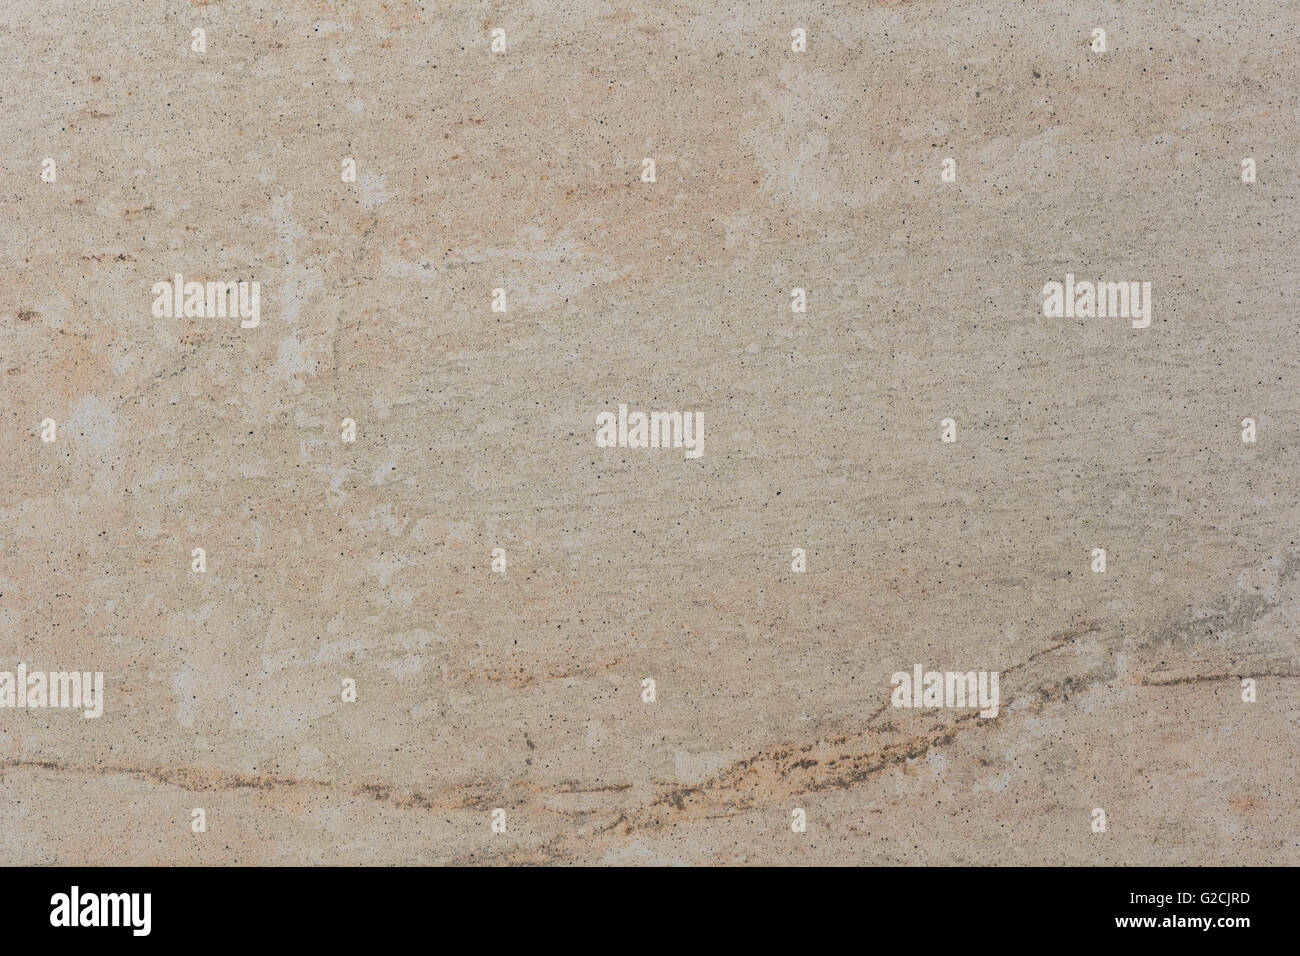 Esto es una losa de piso, con una textura de color beige. Foto de stock